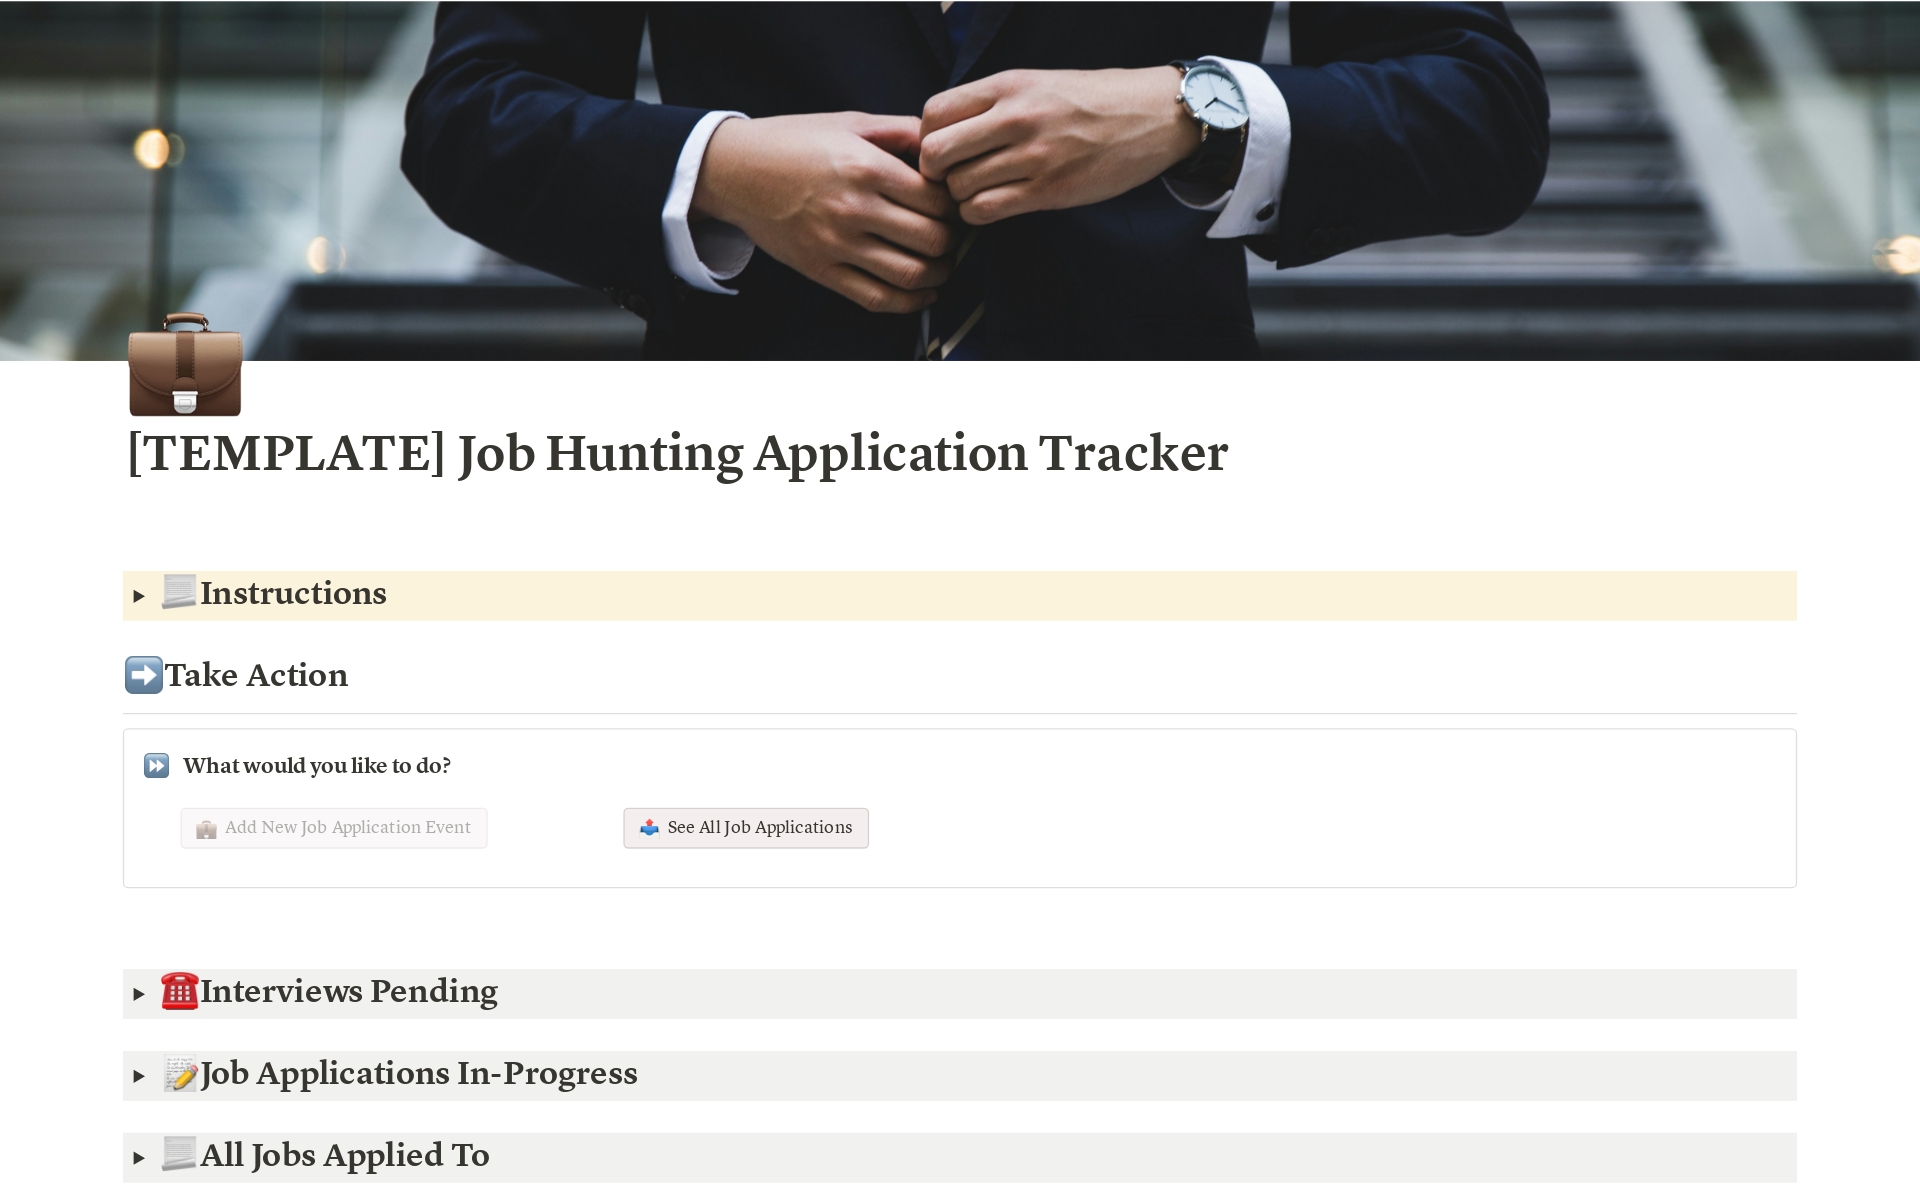 Uma prévia do modelo para Job Hunting and Application Tracker